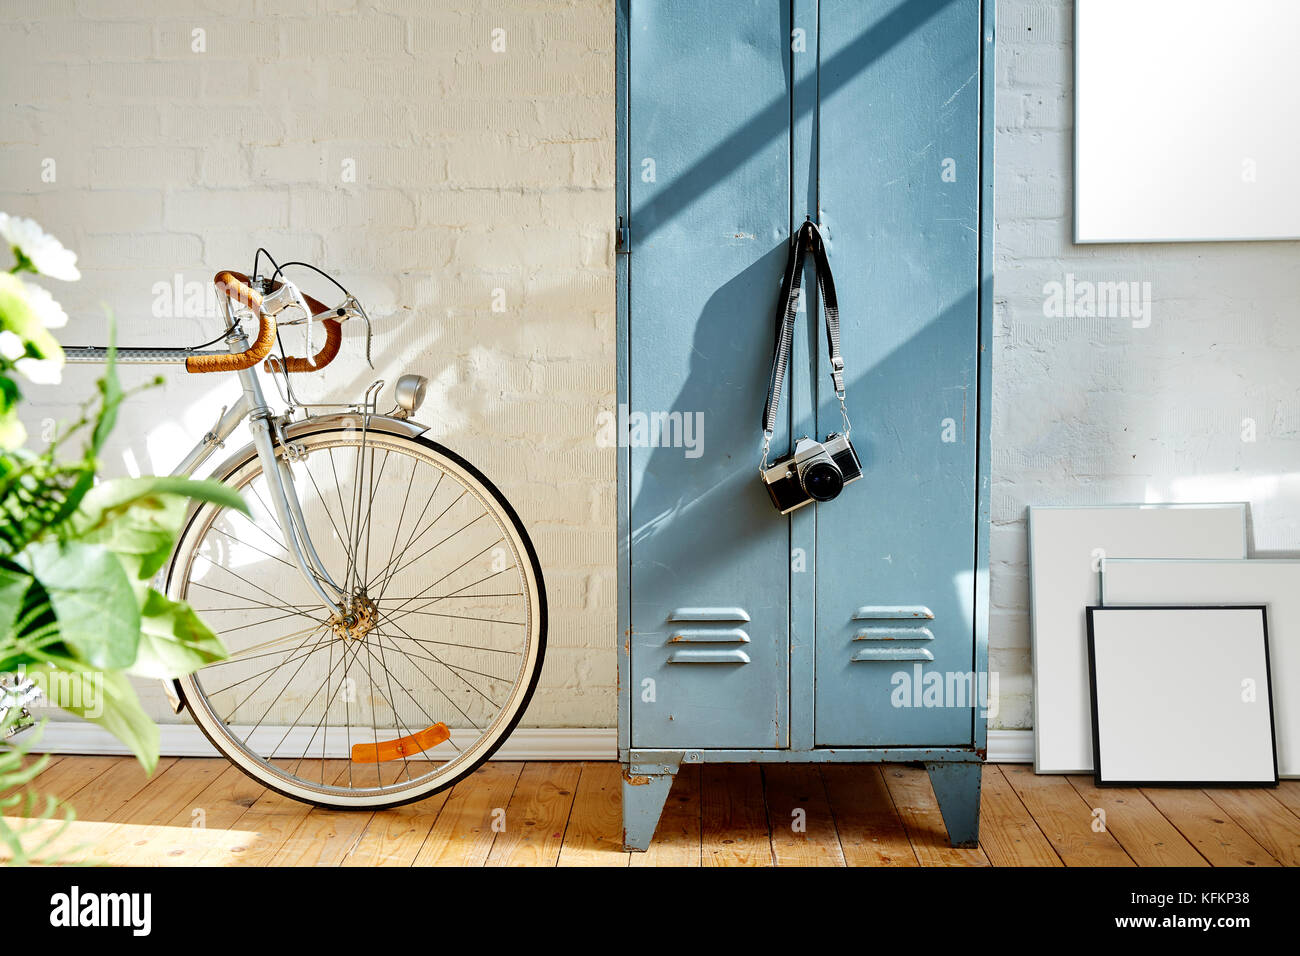 Appartamento creativo decorazione vintage cornici e vivida luce solare Foto Stock